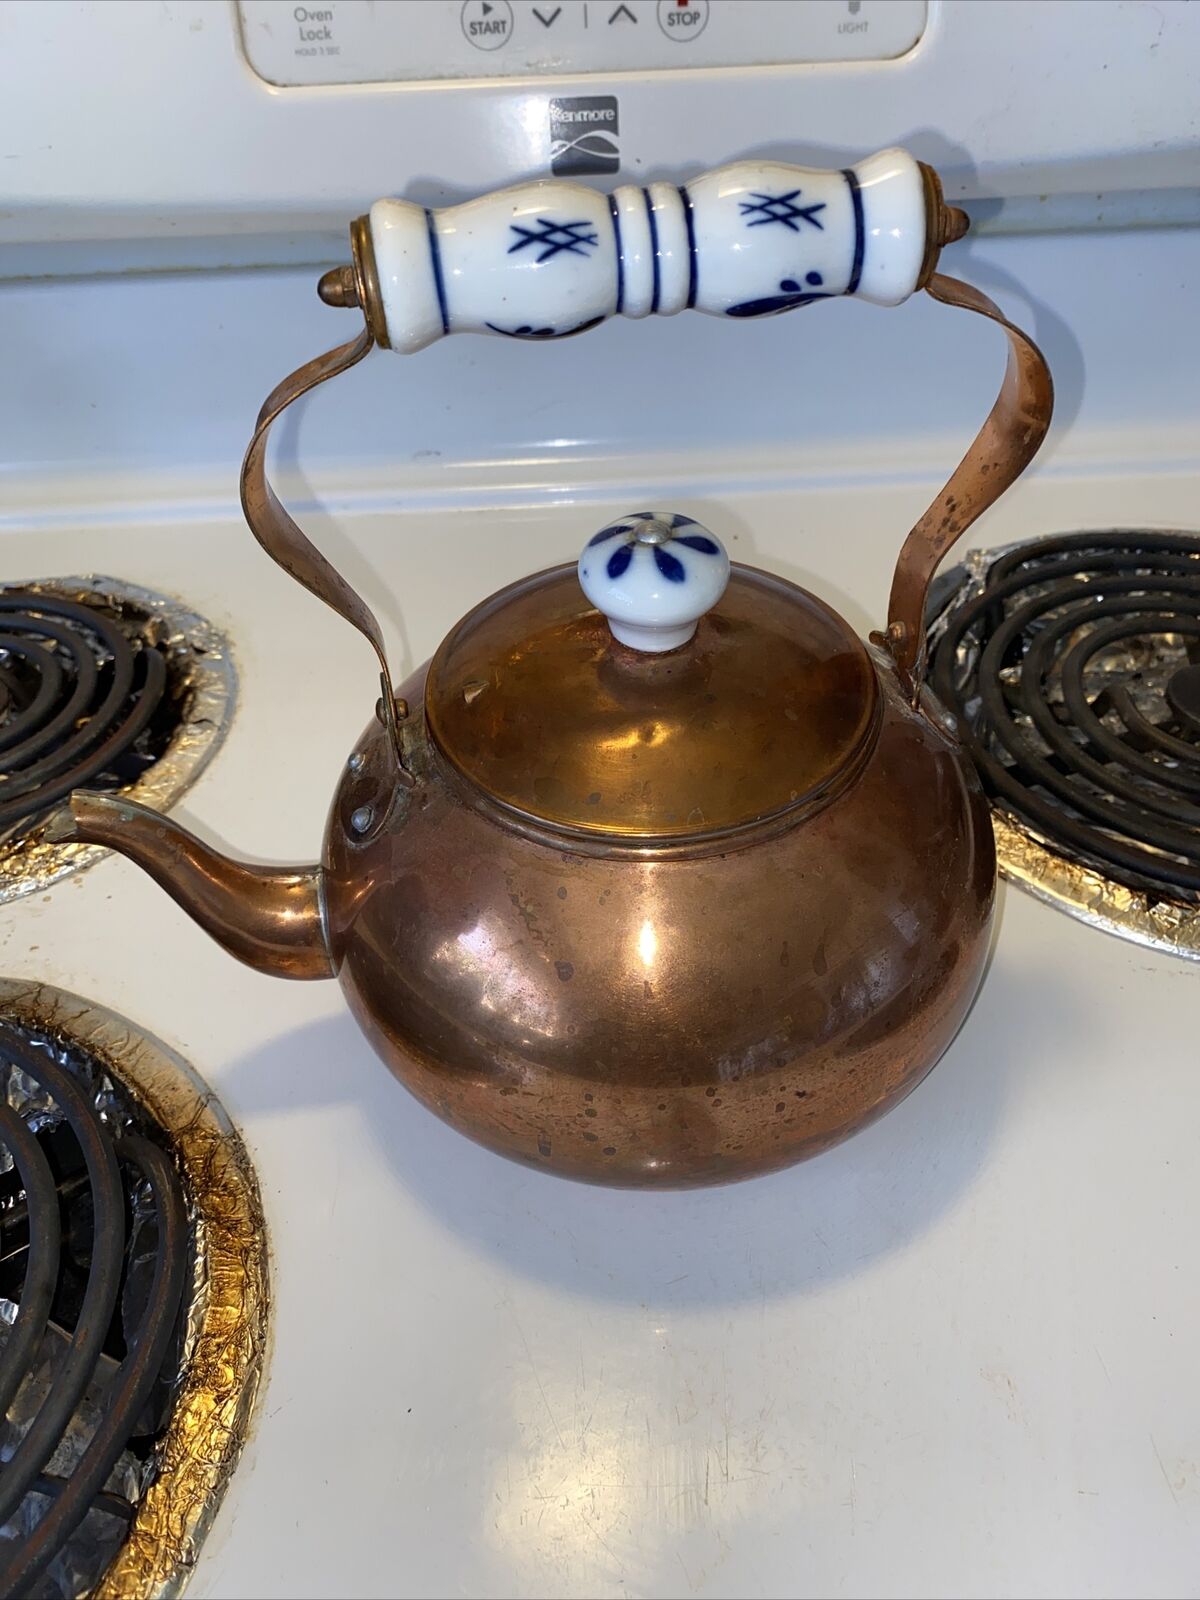 Copper tea kettle vintage teapot porcelain cobalt blue and white handle kitchen